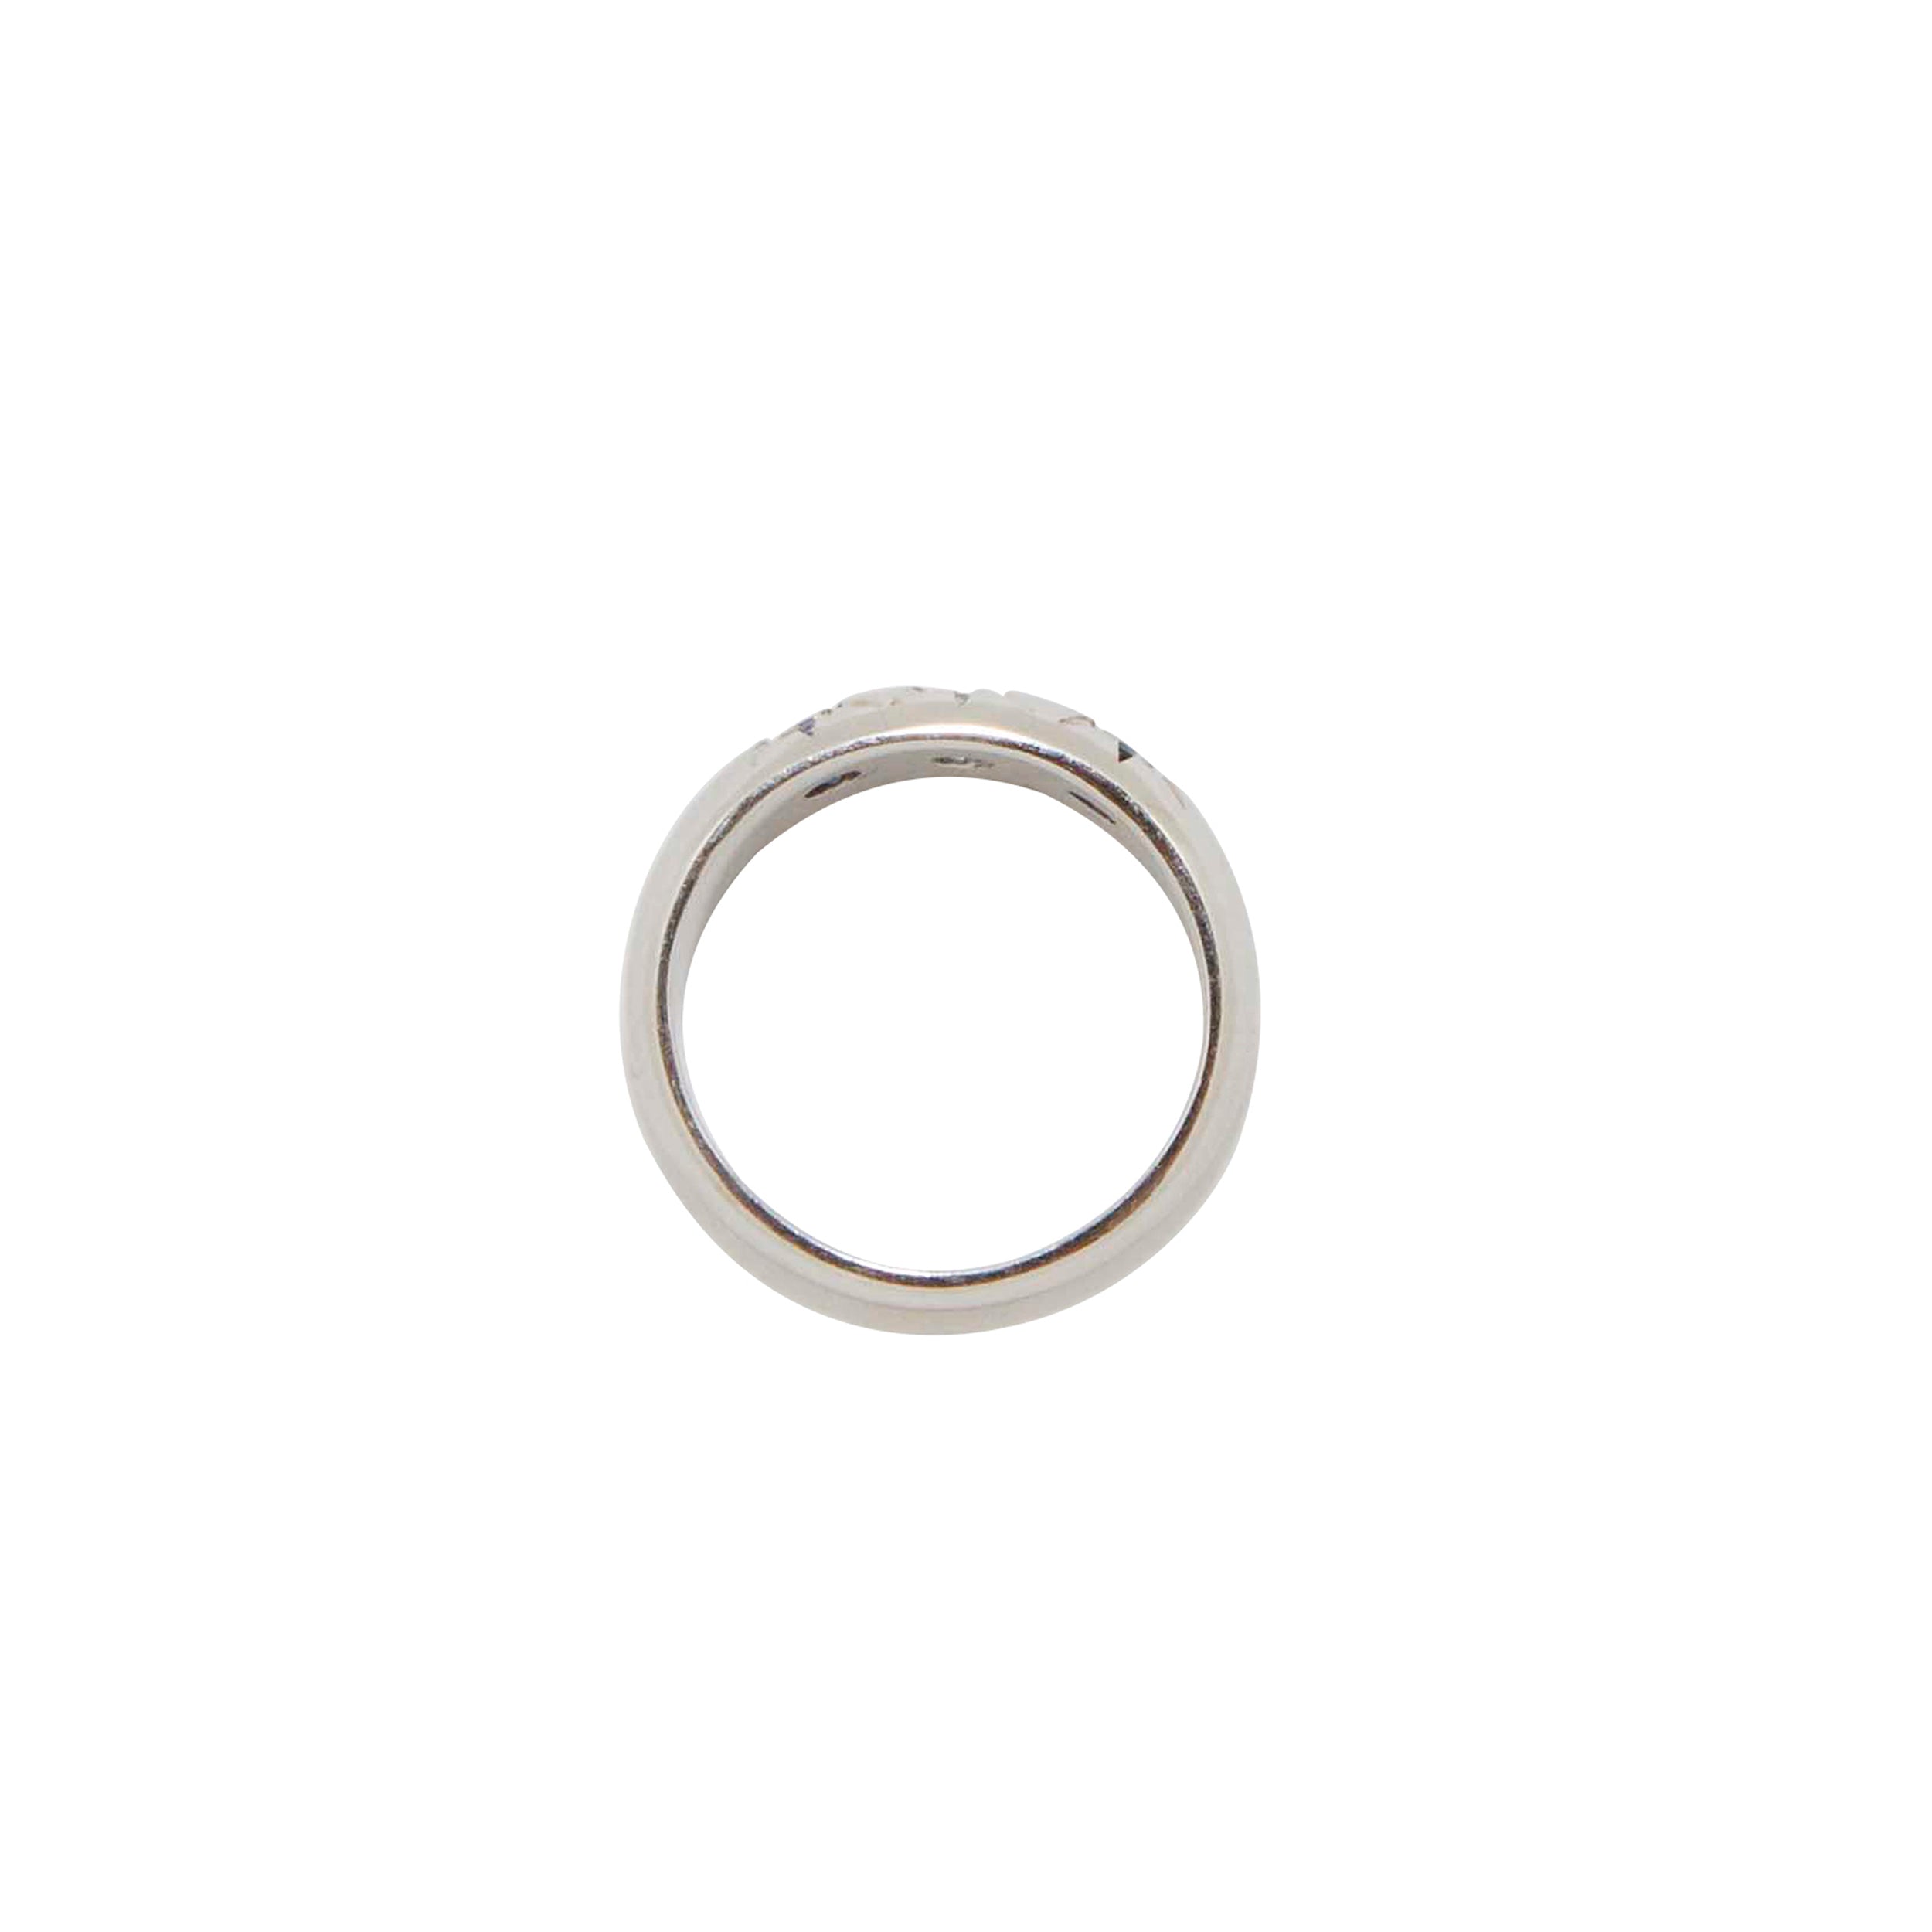 The F&B Custom 3-Starburst Ring